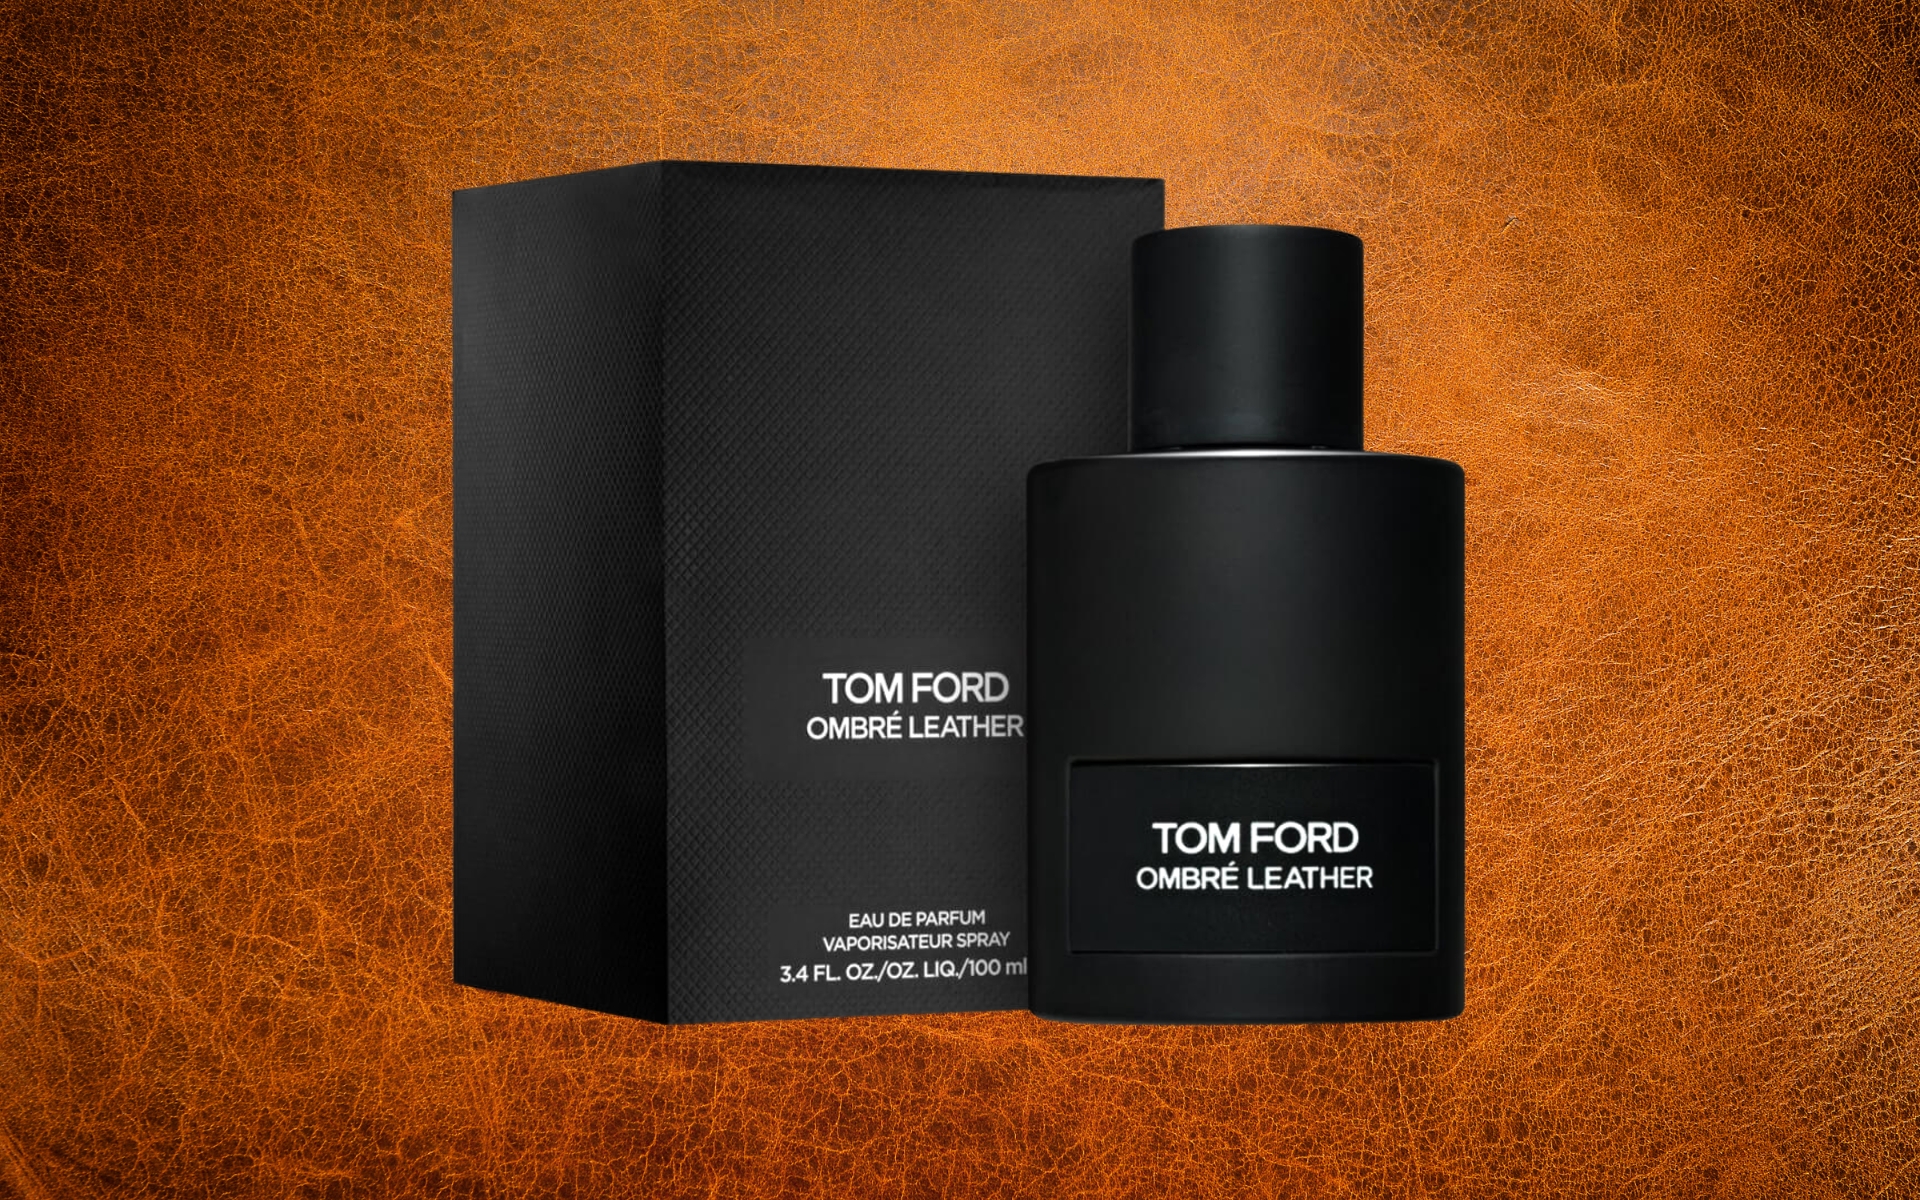 Tom Ford Ombre Leather Eau de Parfum Review - Escentual's Blog